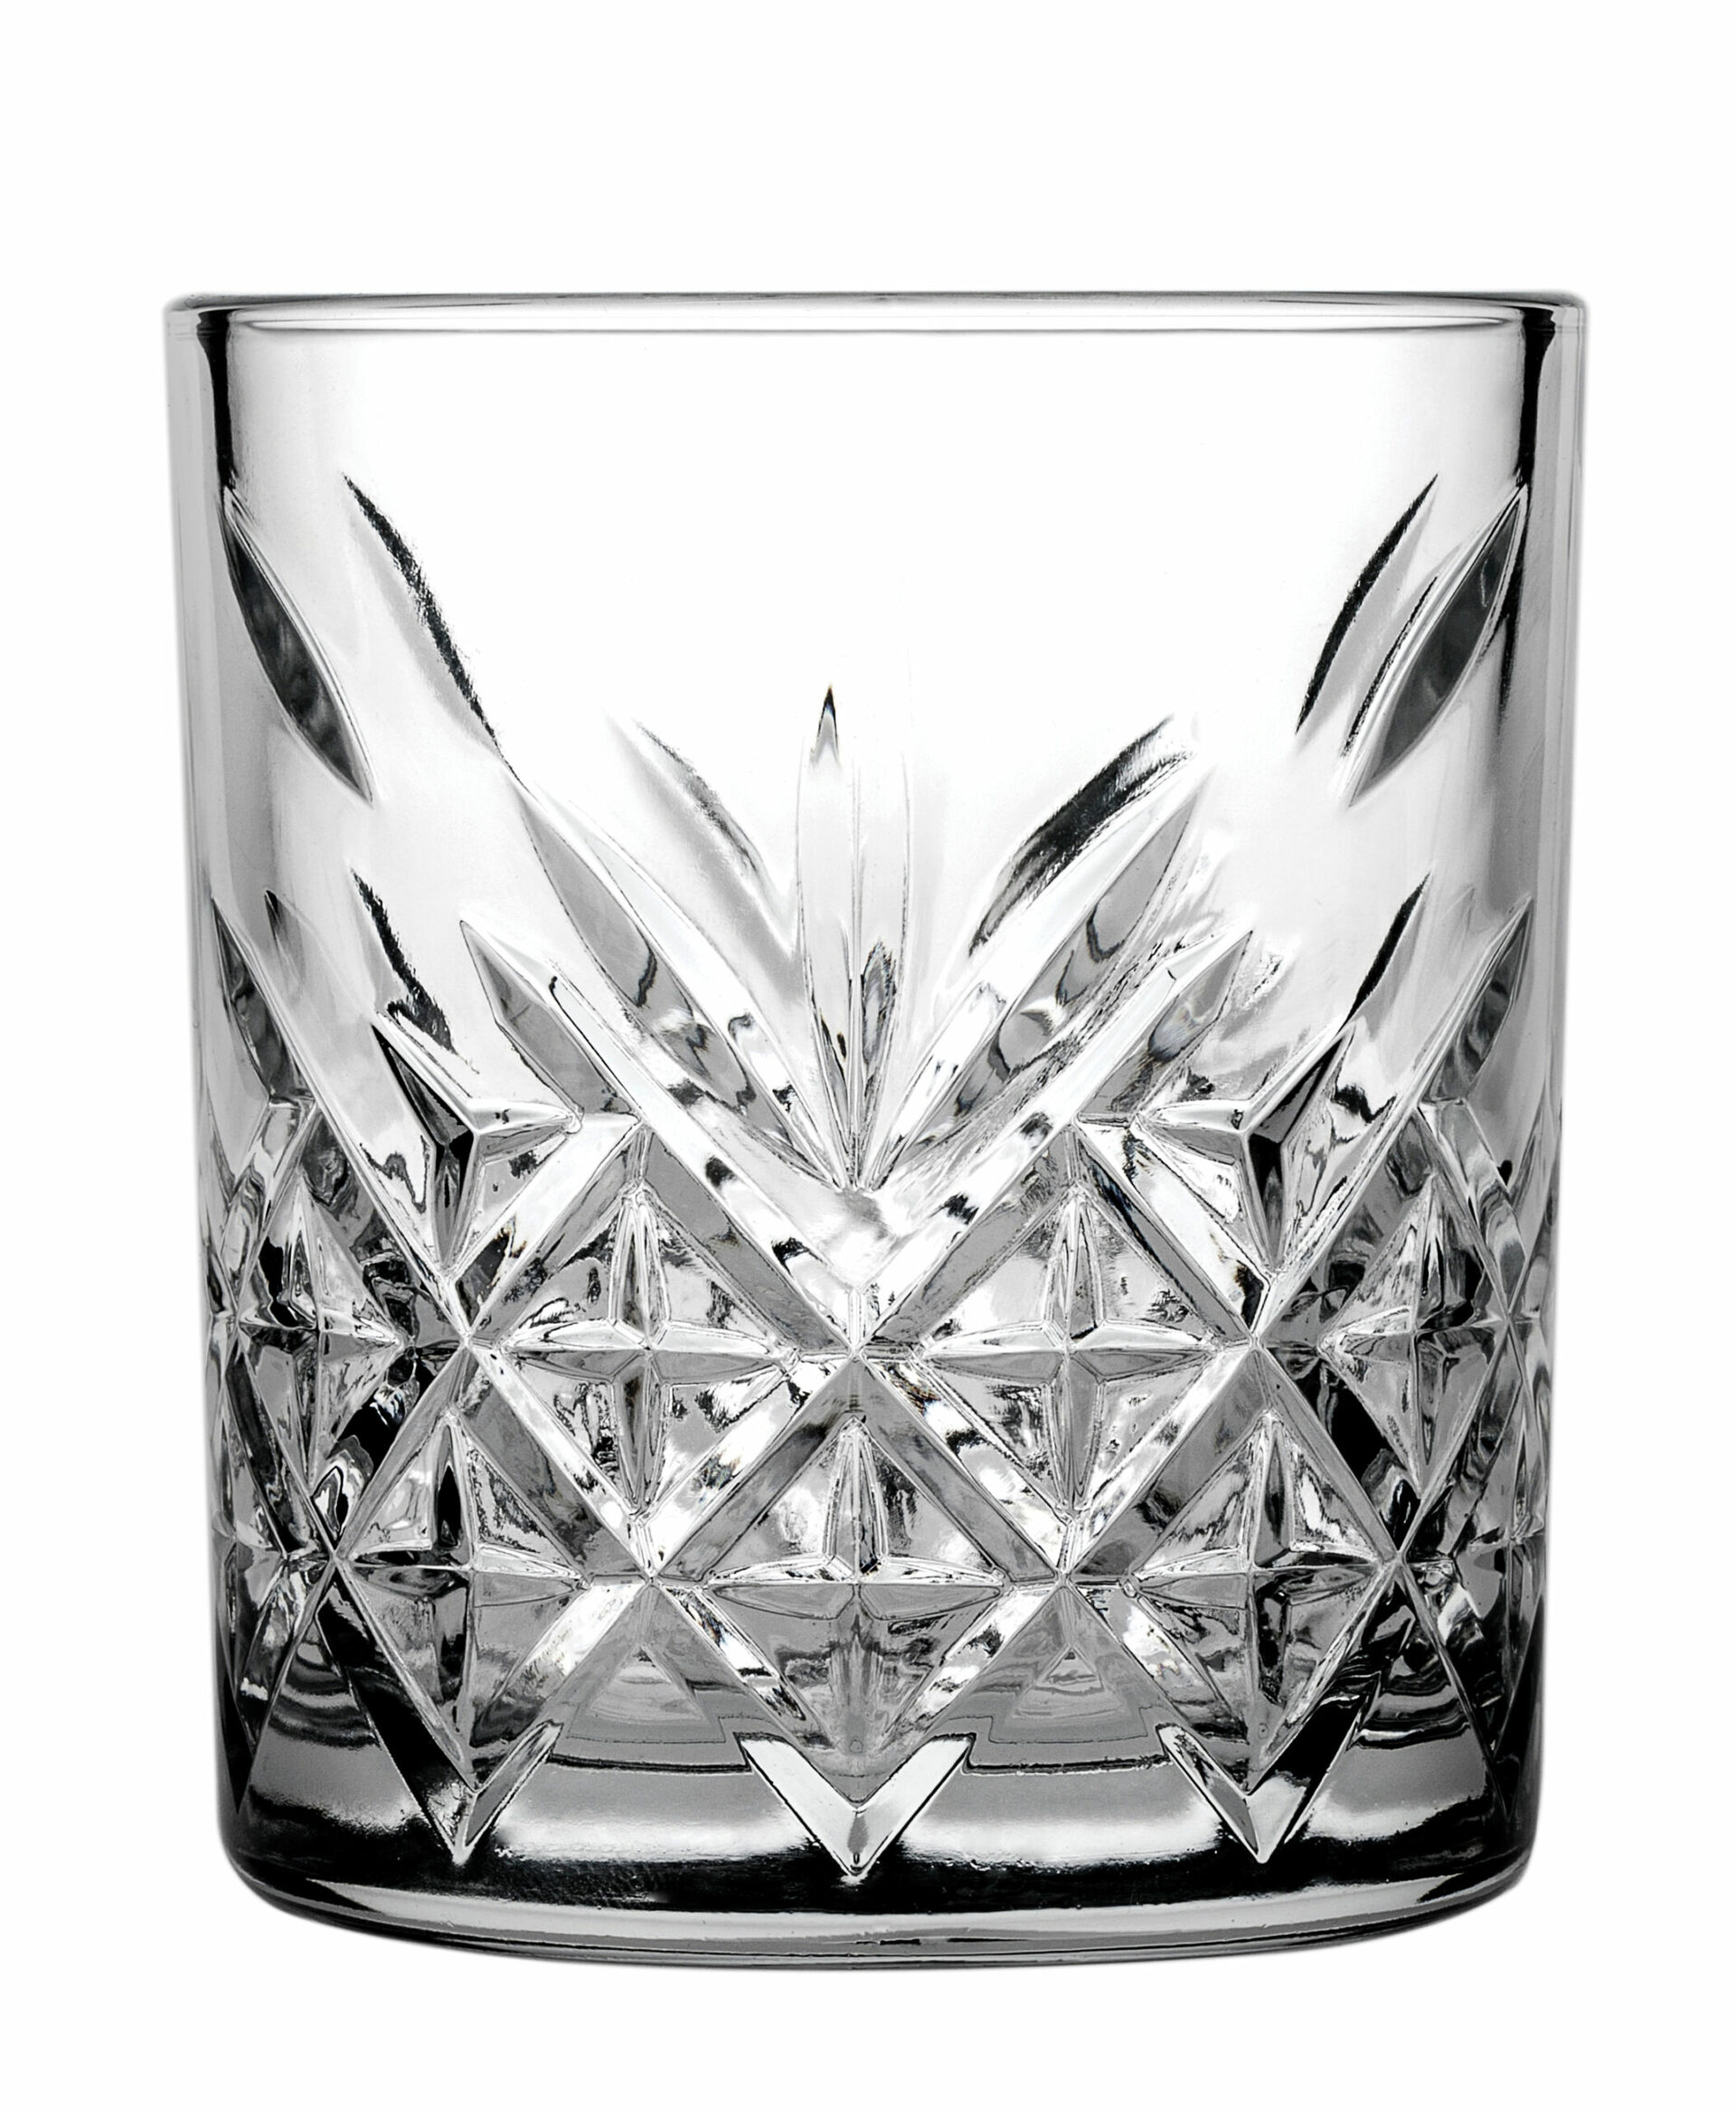 205ml įraižyto stiklo taurės viskiui TIMELESS 52810